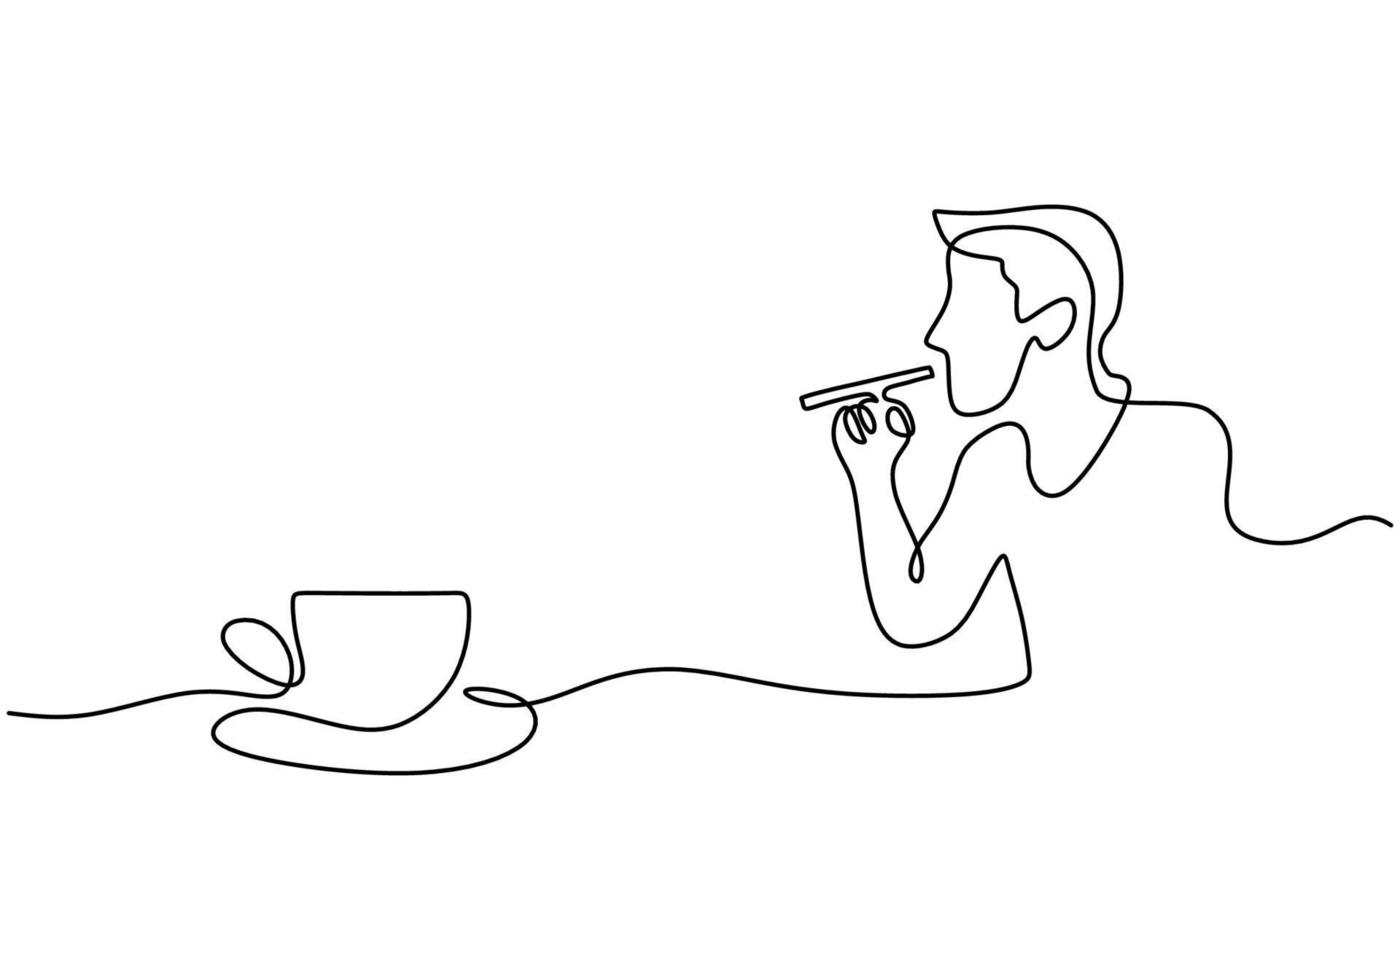 una linea singola continua di budello fumante disegnato a mano che beve caffè vettore